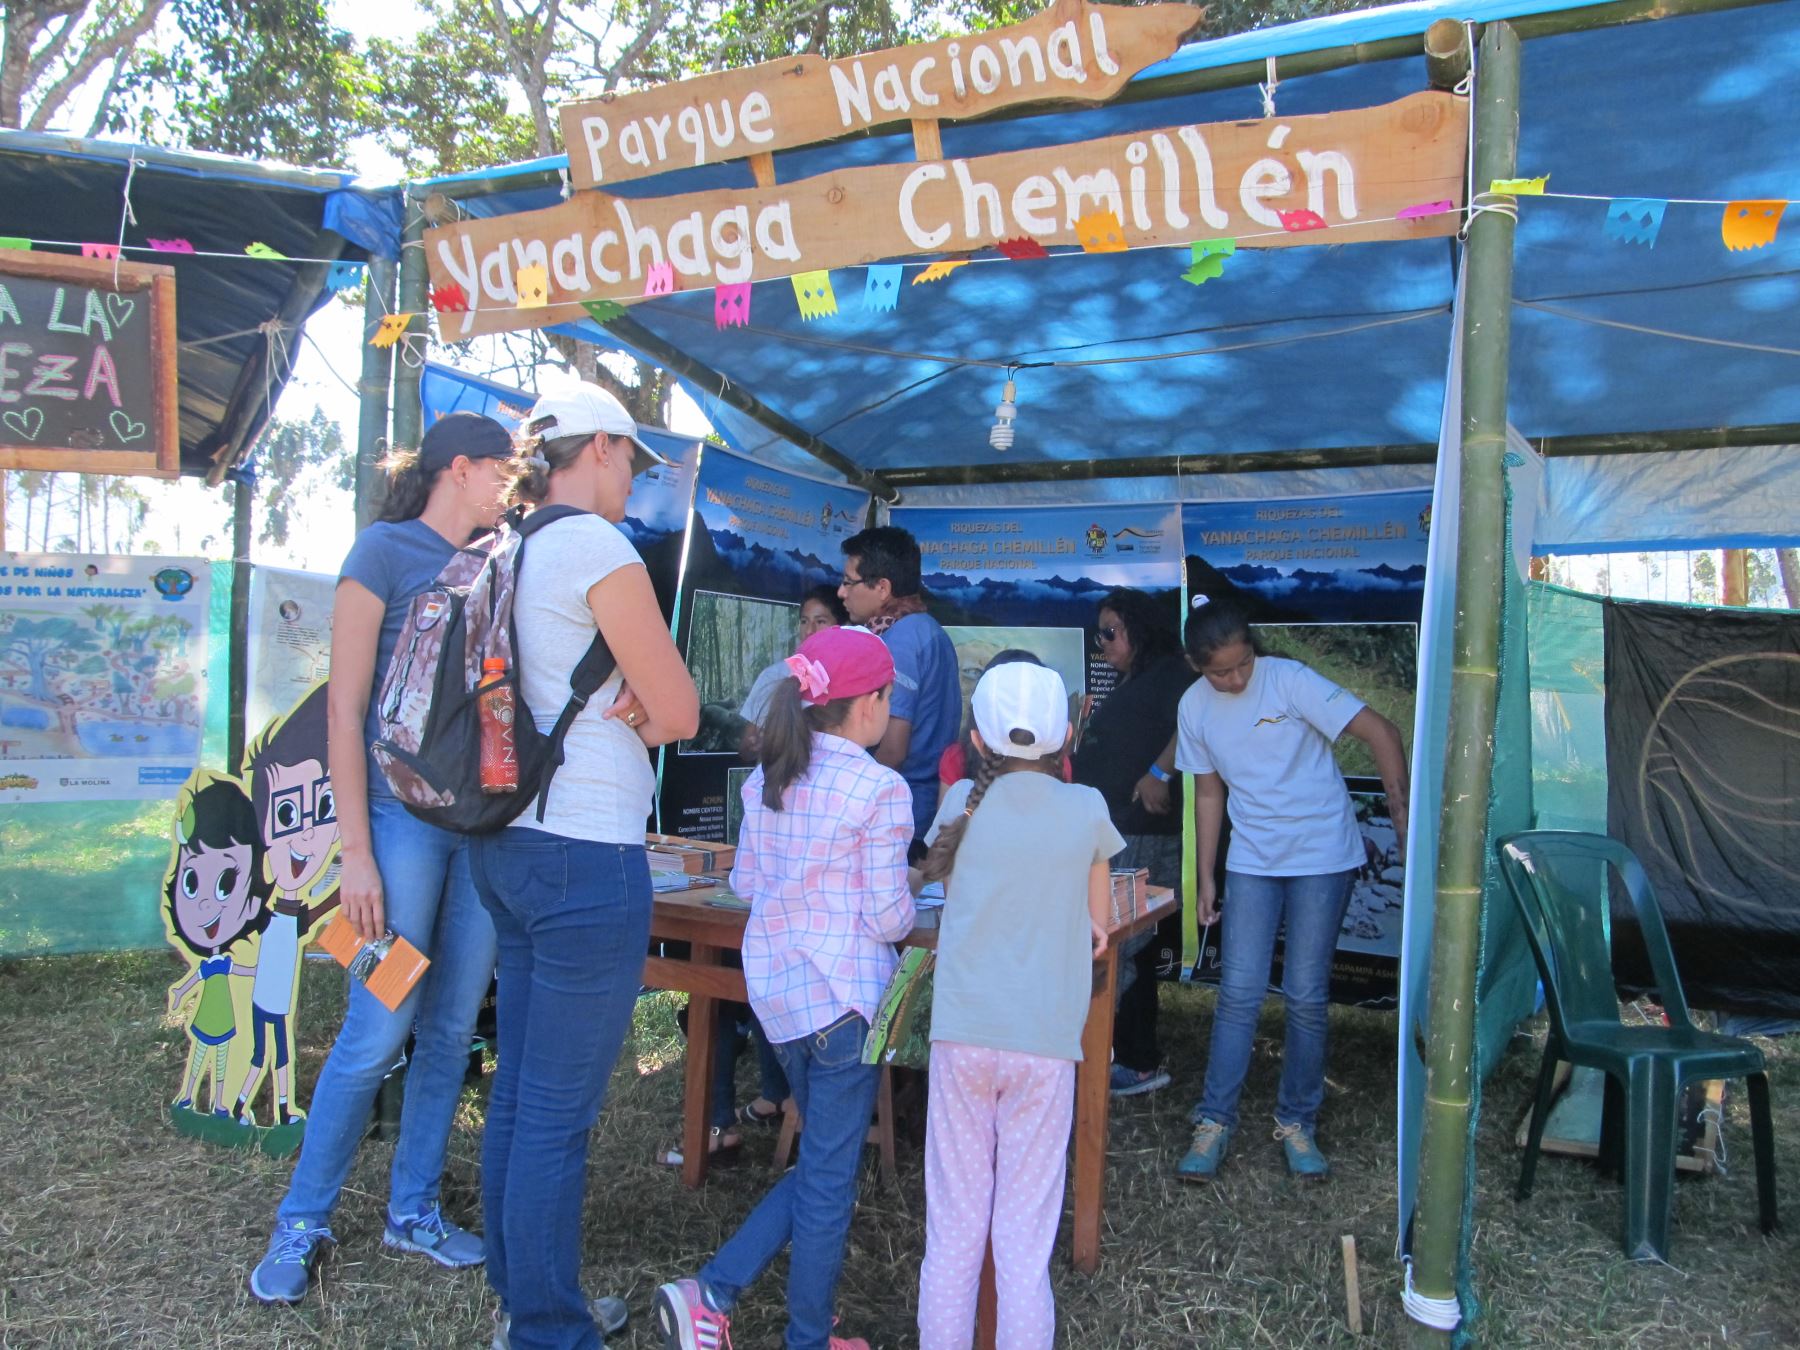 Parque Yanachaga Chemillén recibió más de 4,000 visitas durante festival "Selvámonos".